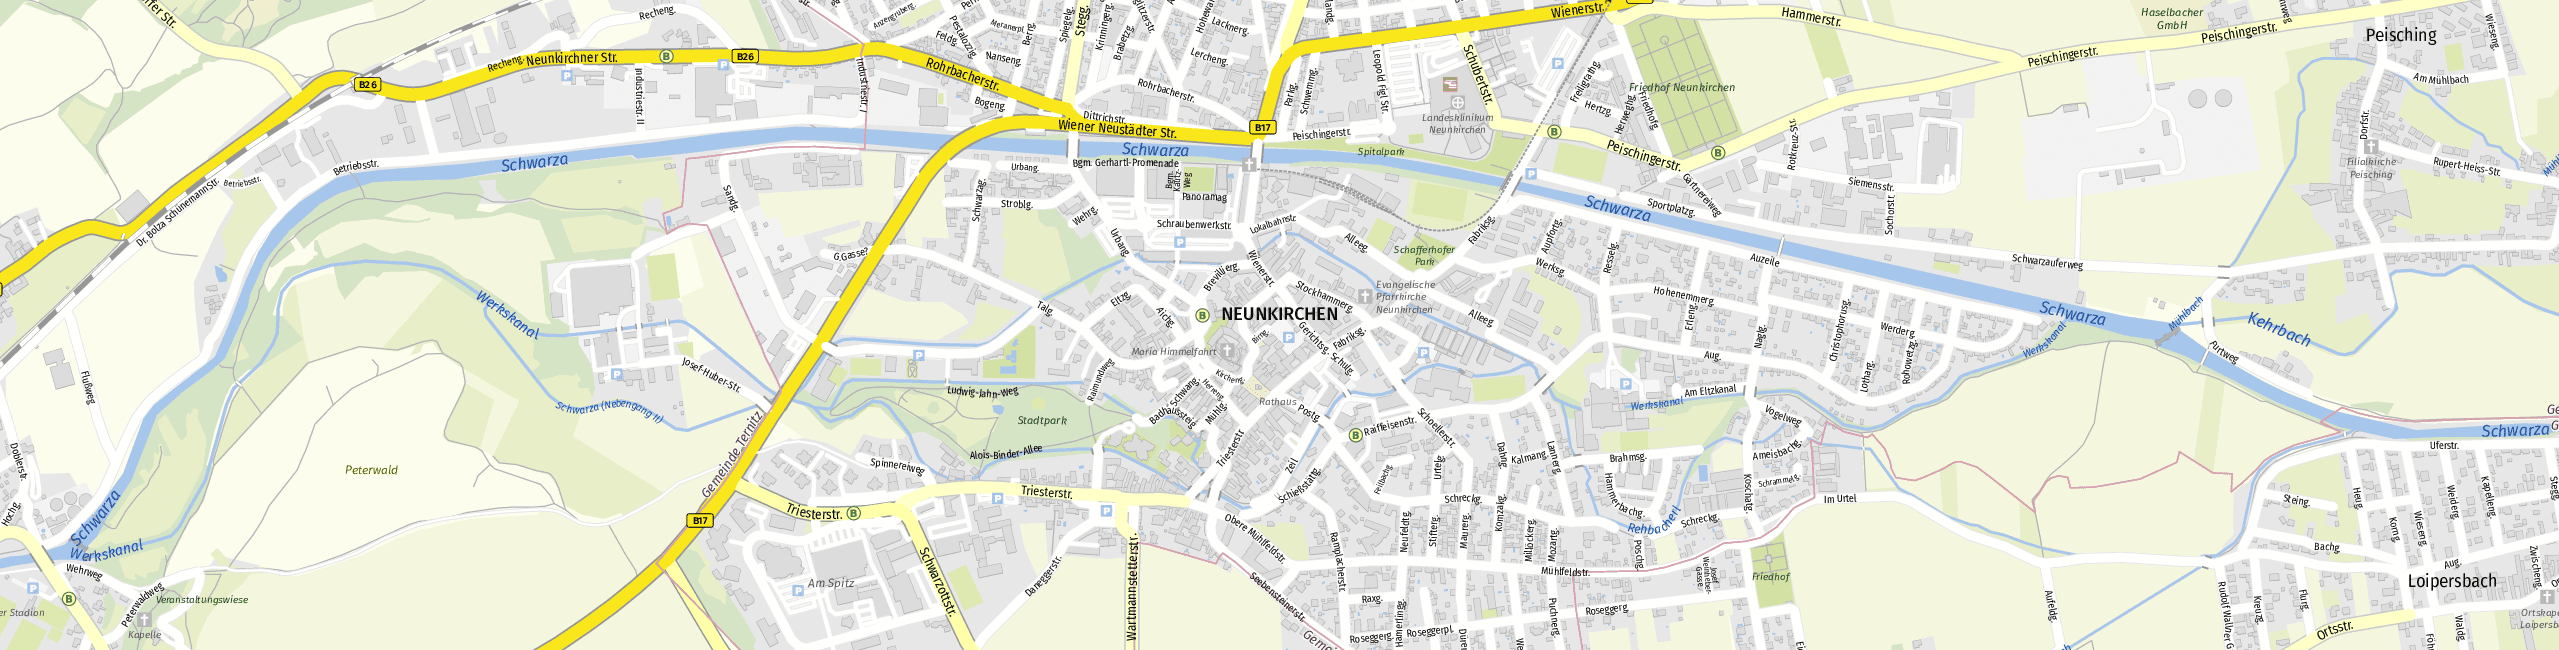 Stadtplan Neunkirchen zum Downloaden.